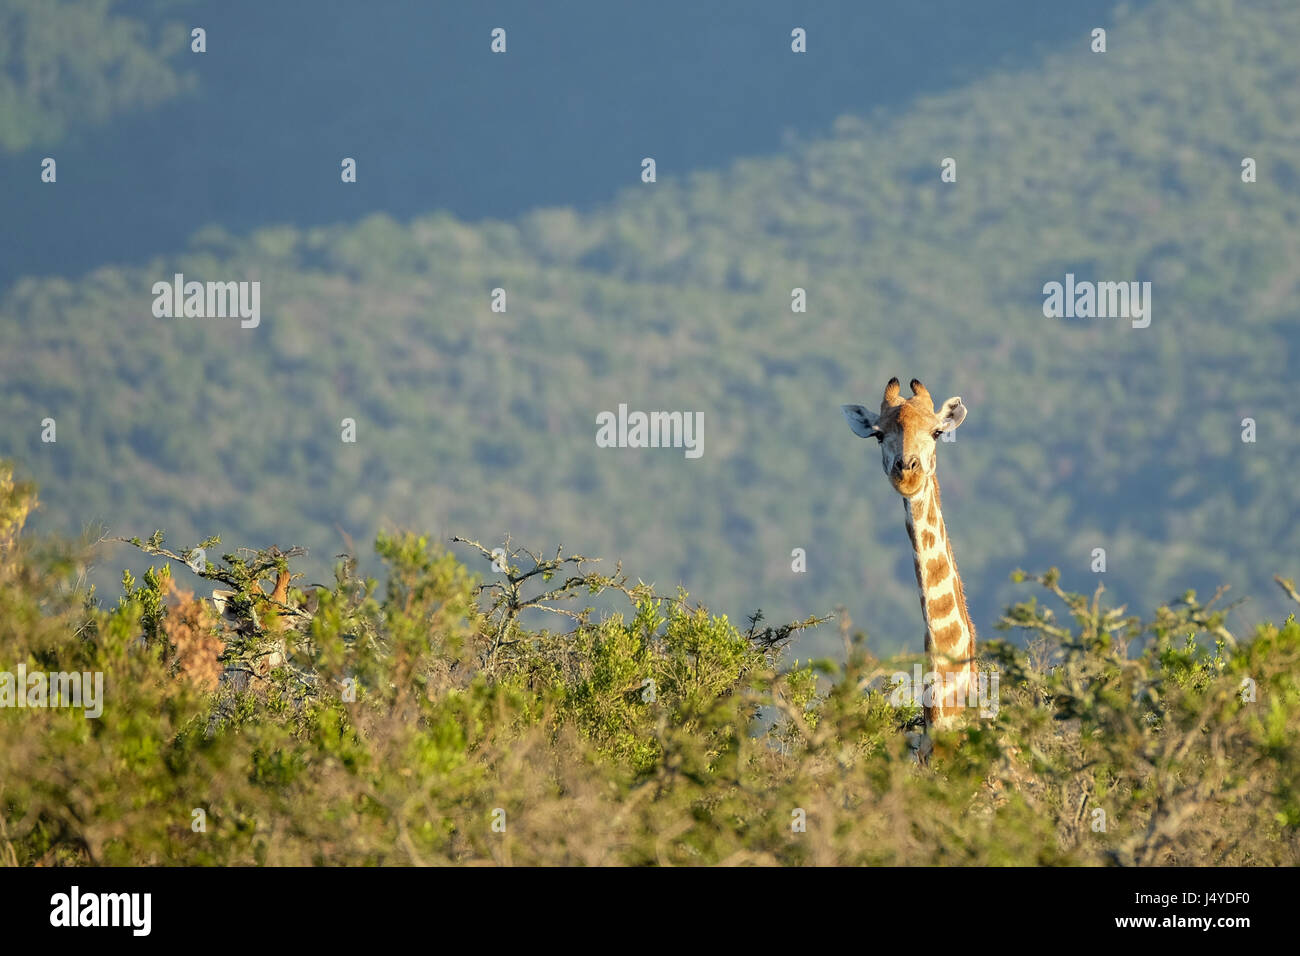 Eine Giraffe steckt den Kopf über den Bäumen, schauen neugierig was um ihn herum vor sich geht Stockfoto